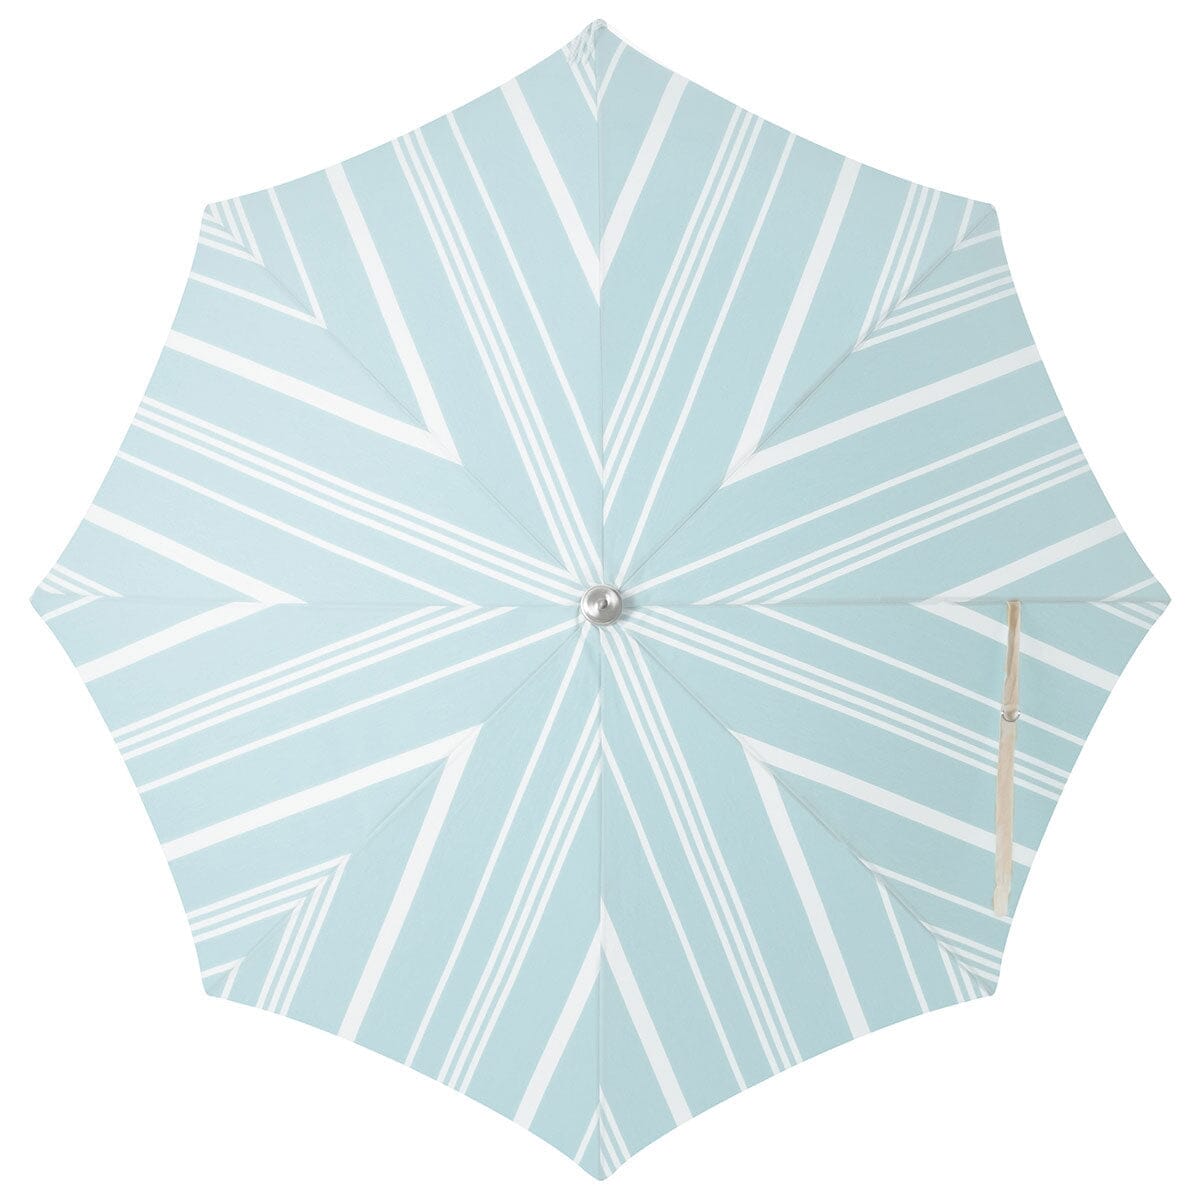 The Premium Beach Umbrella - Vintage Blue Stripe